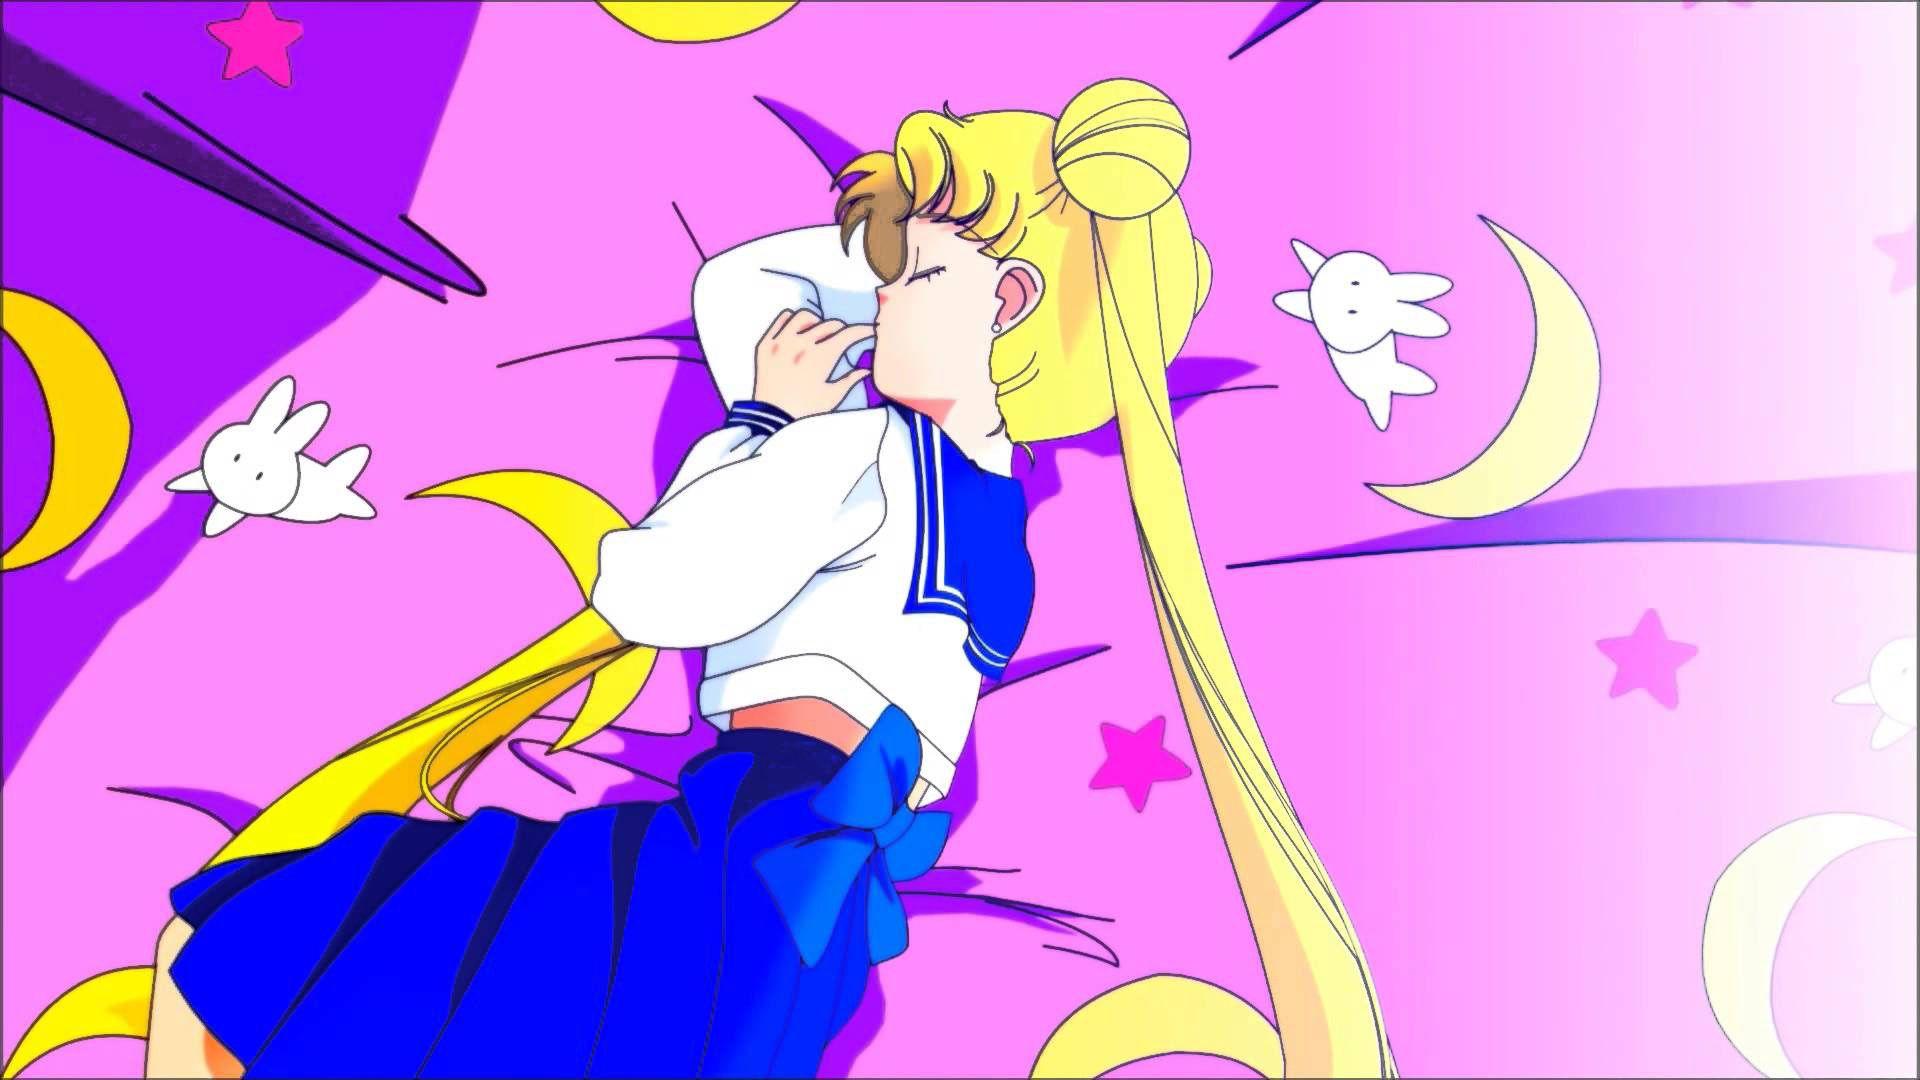 Sailor moon wallpaper Pinteres. Sailor moon aesthetic, Sailor moon wallpaper, Sailor moon